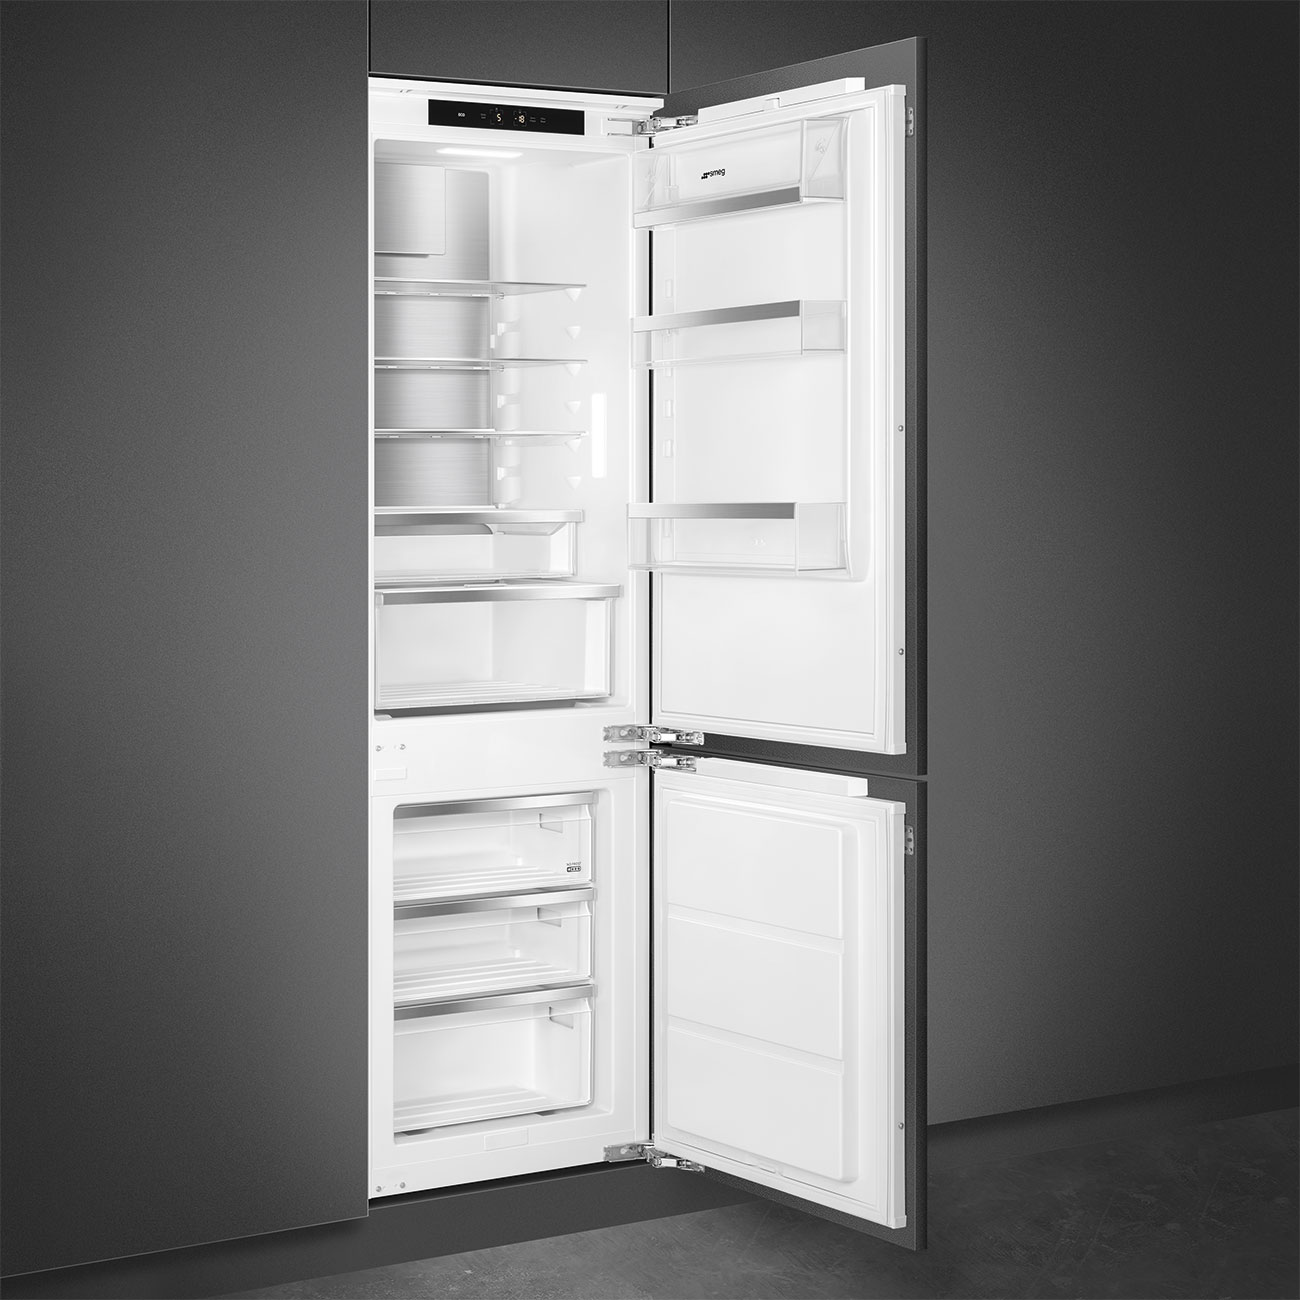 Koel-vriescombinatie Inbouw koelkast- Smeg_2